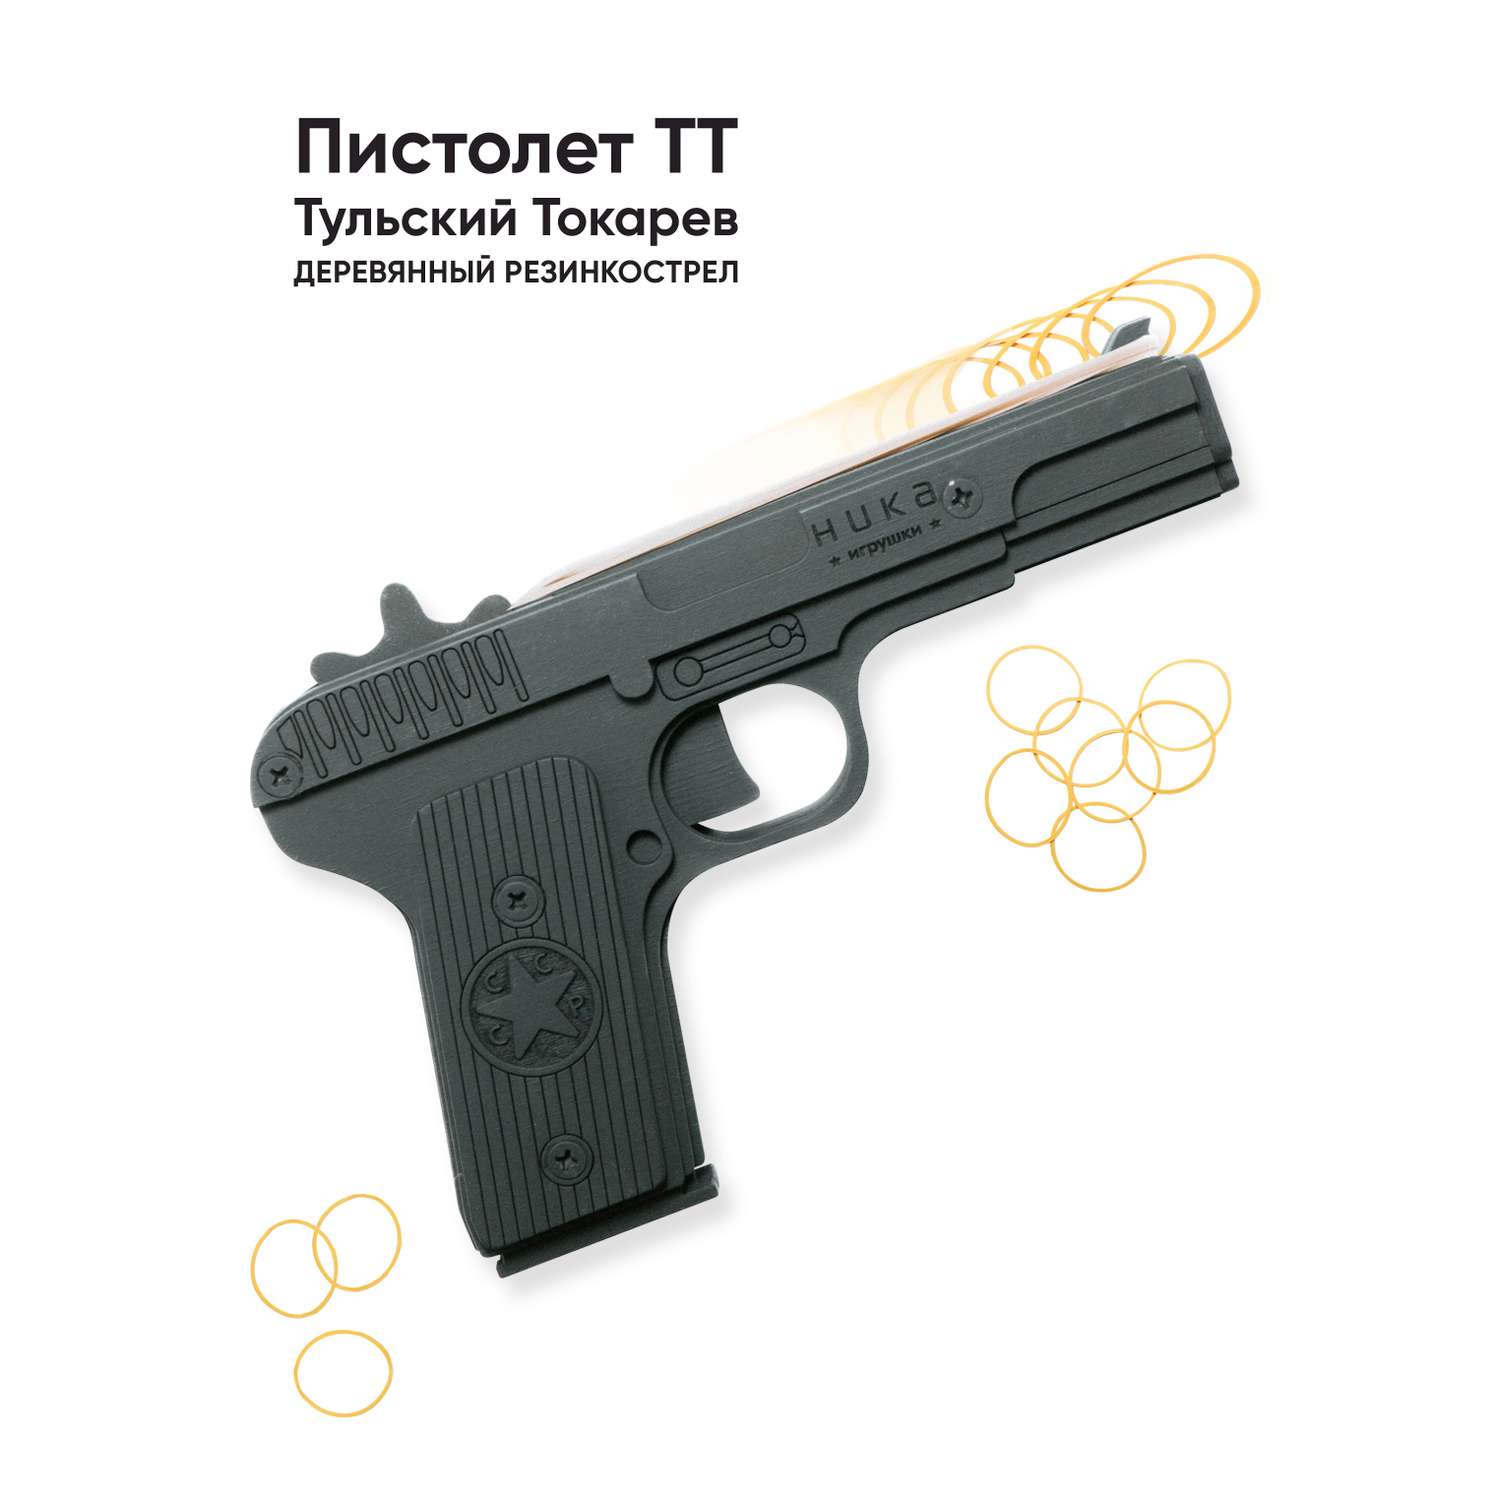 Пистолет игрушечный ТТ НИКА игрушки Резинкострел - фото 1